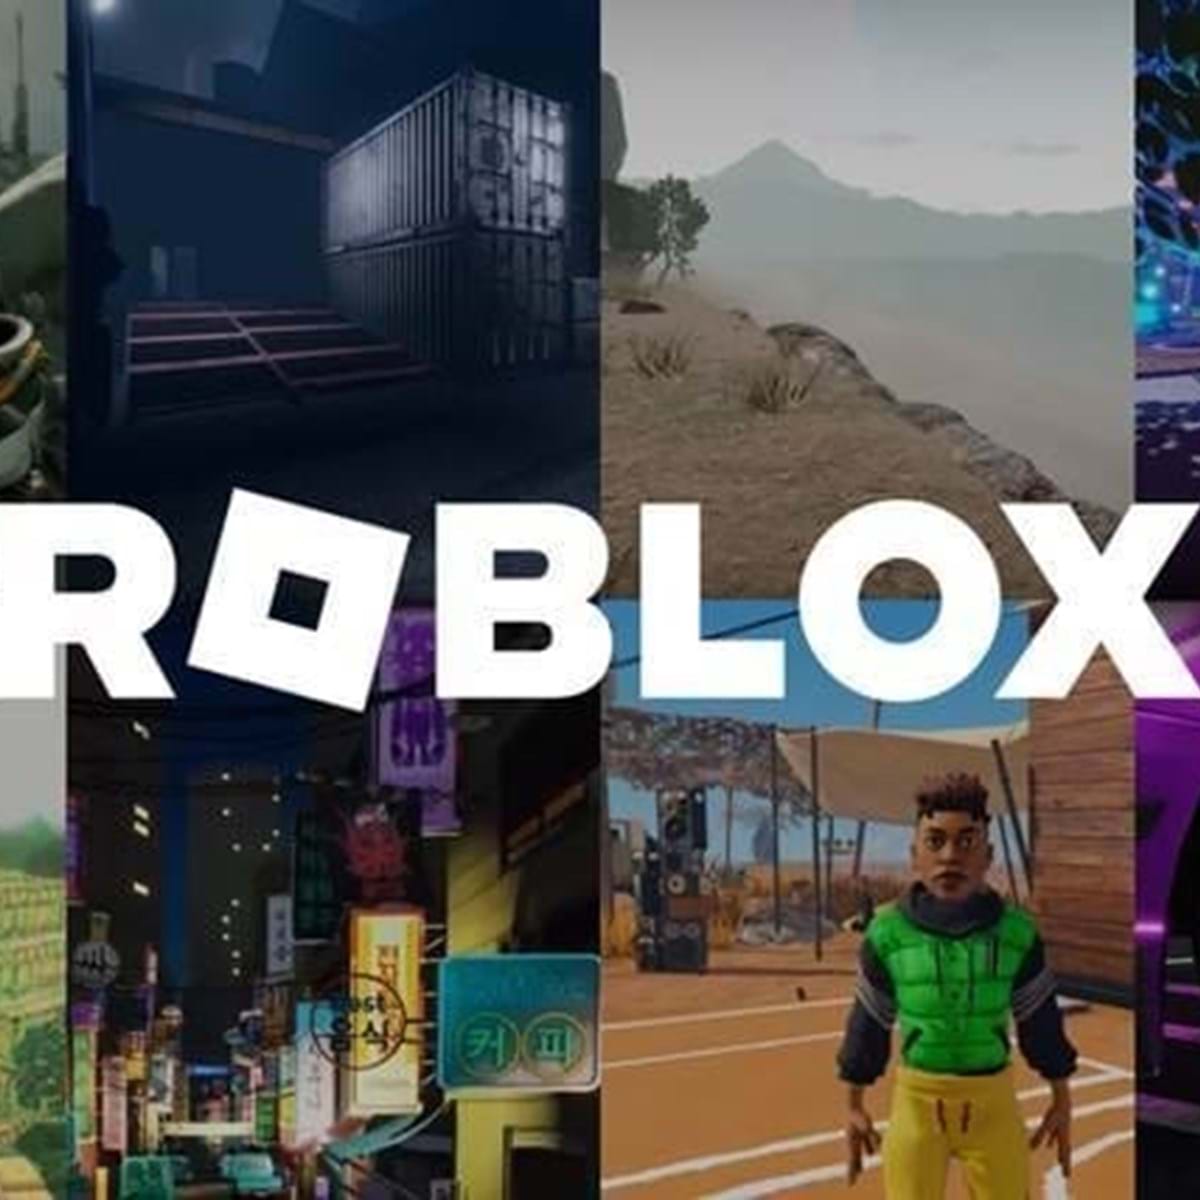 Roblox | Conta roblox+100 robux juntos